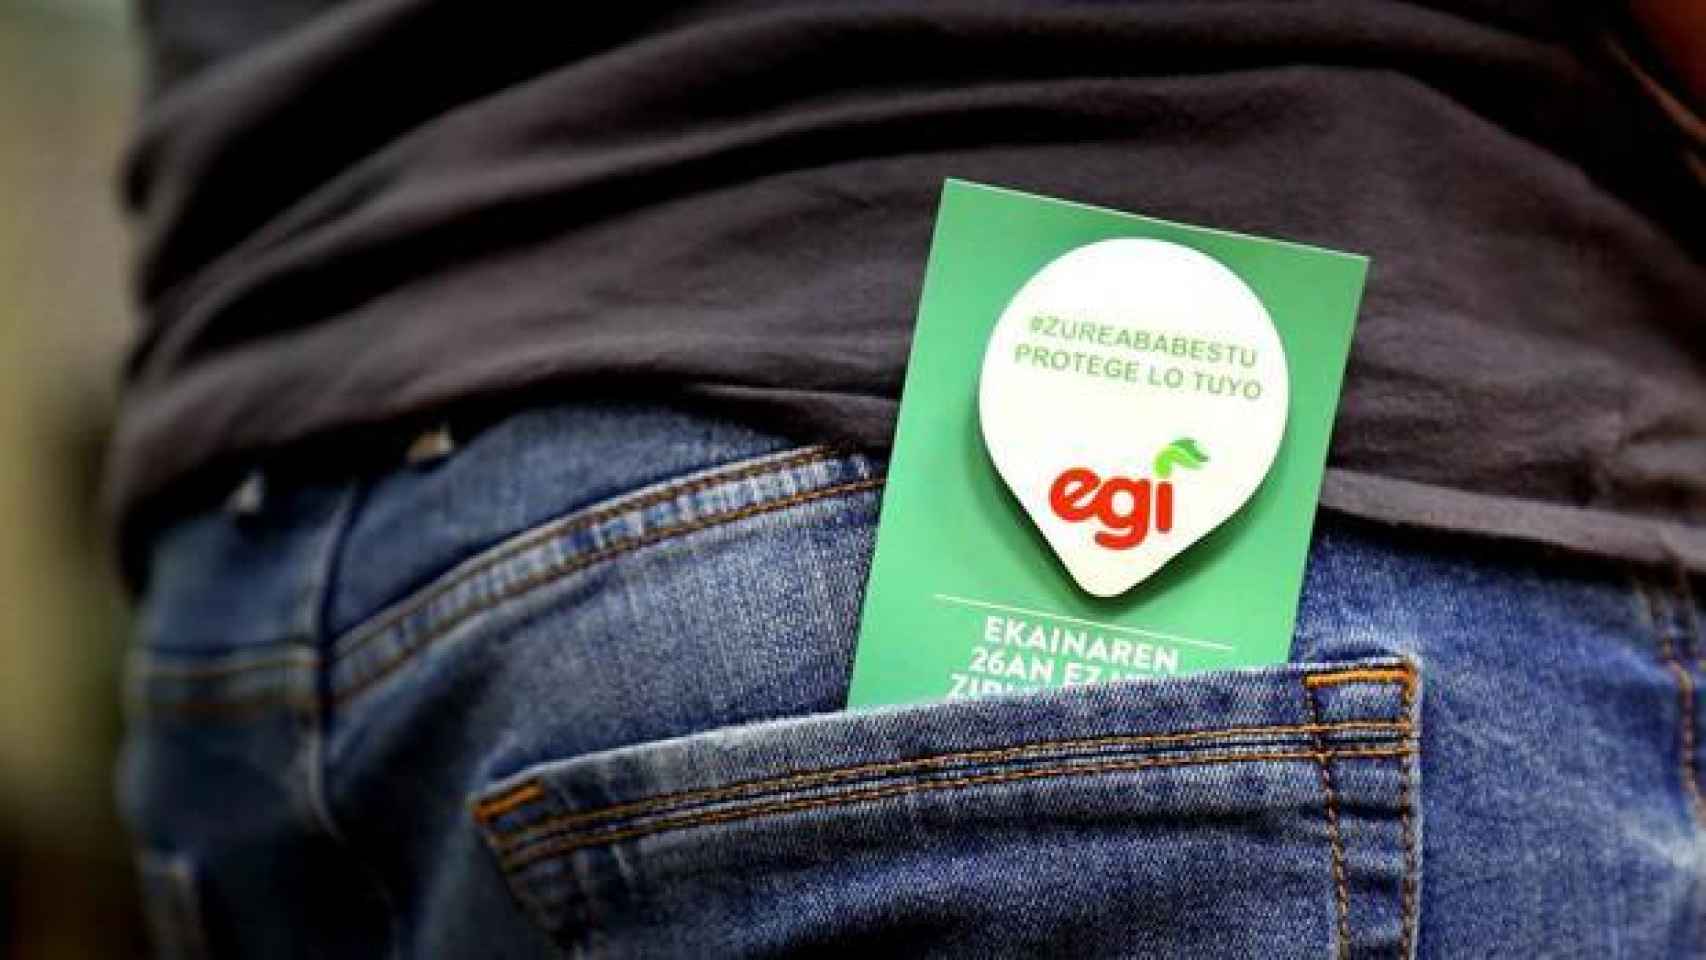 Imagen de la campaña de EGI.